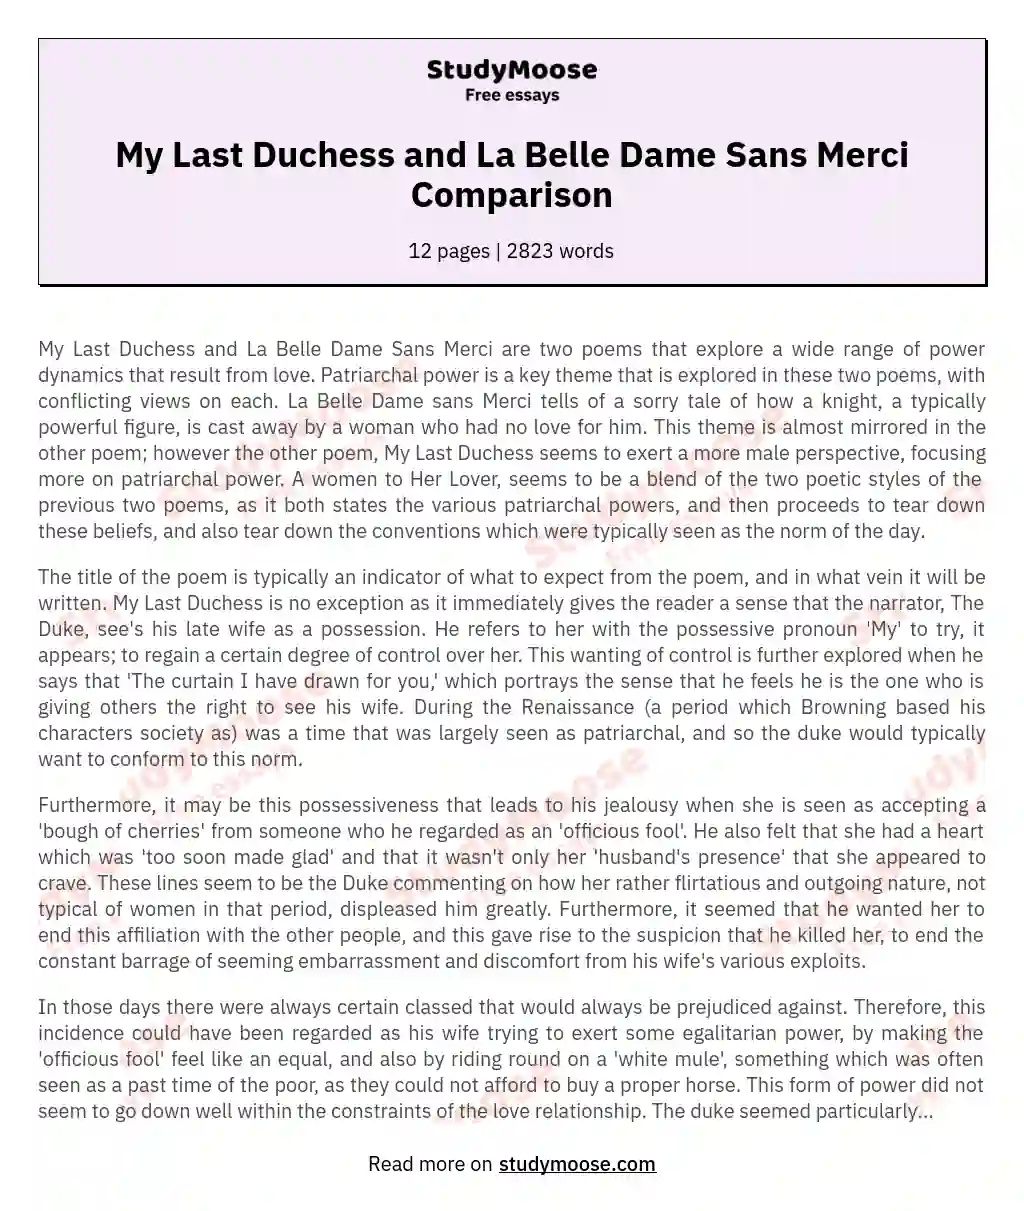 My Last Duchess and La Belle Dame Sans Merci Comparison essay